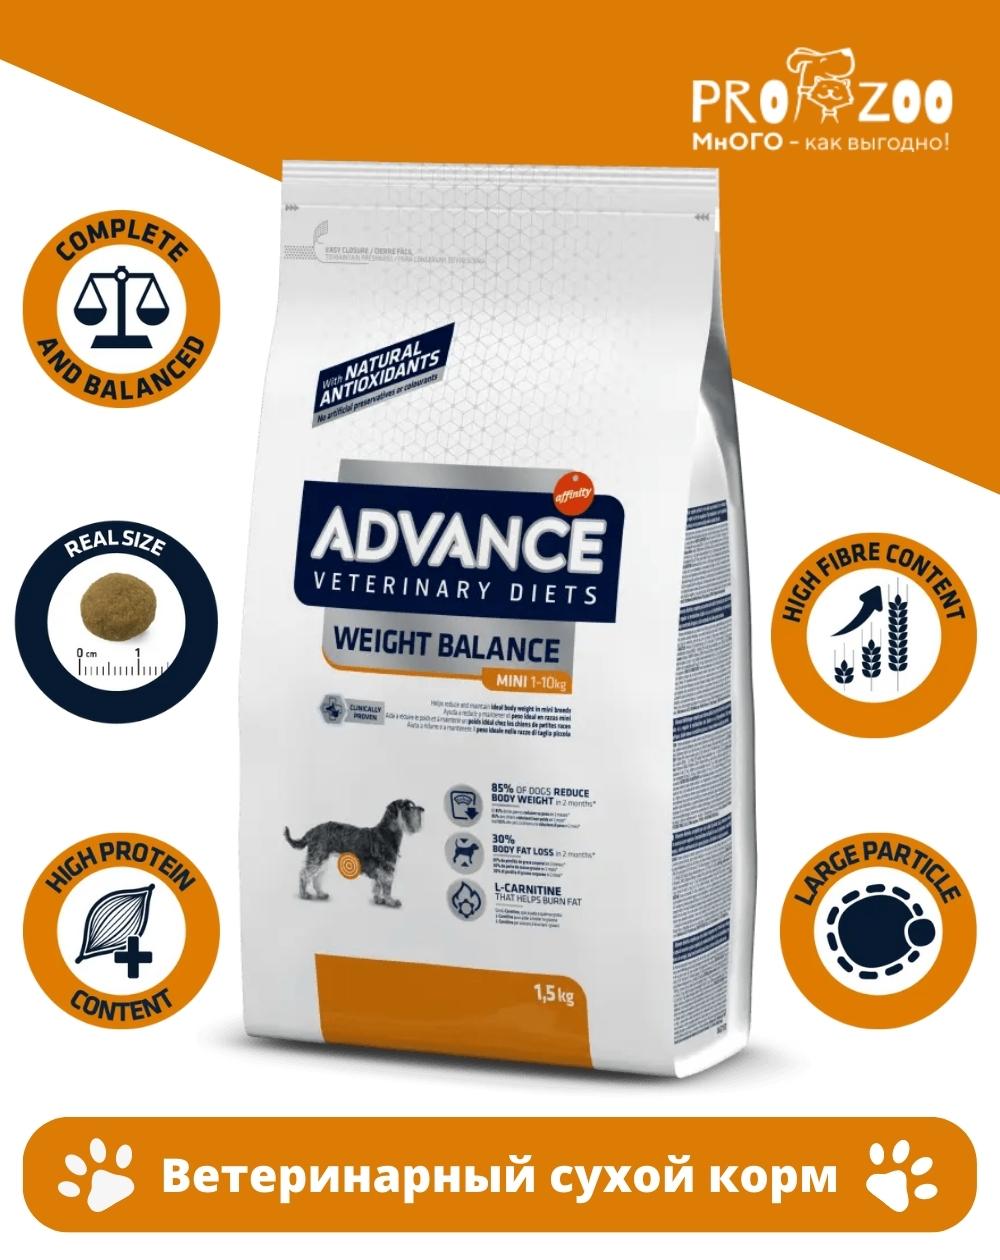 Сухой корм Advance VetDiet WeightBalance для собак мелких пород, страдающих ожирением, контроль веса, индейка, 3 кг 1